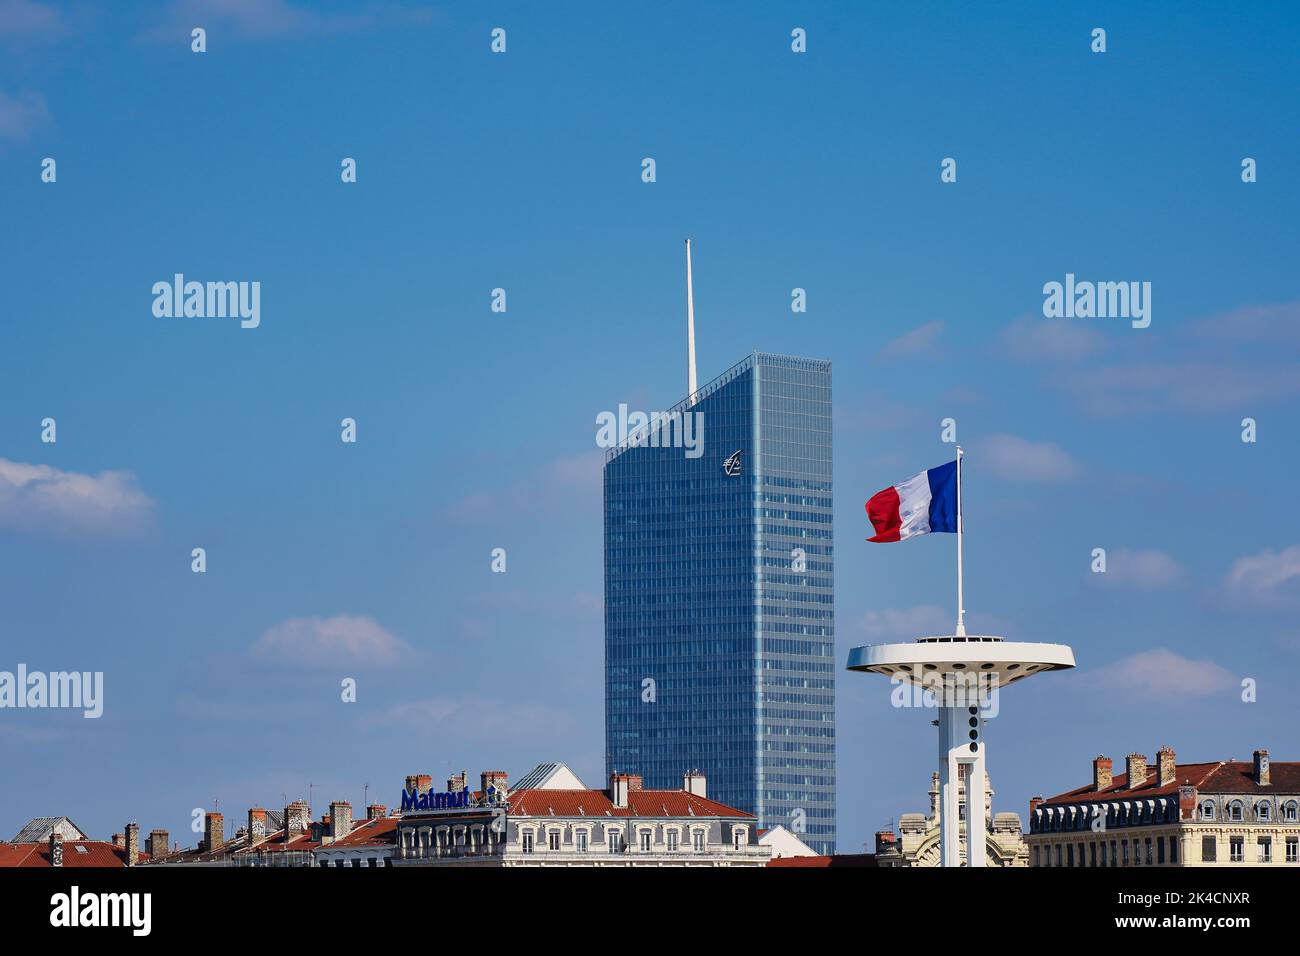 Una hermosa vista de la Torre InCity, Caisse d'Epargne en Lyon, Francia con la bandera francesa bajo un cielo nublado pálido Foto de stock